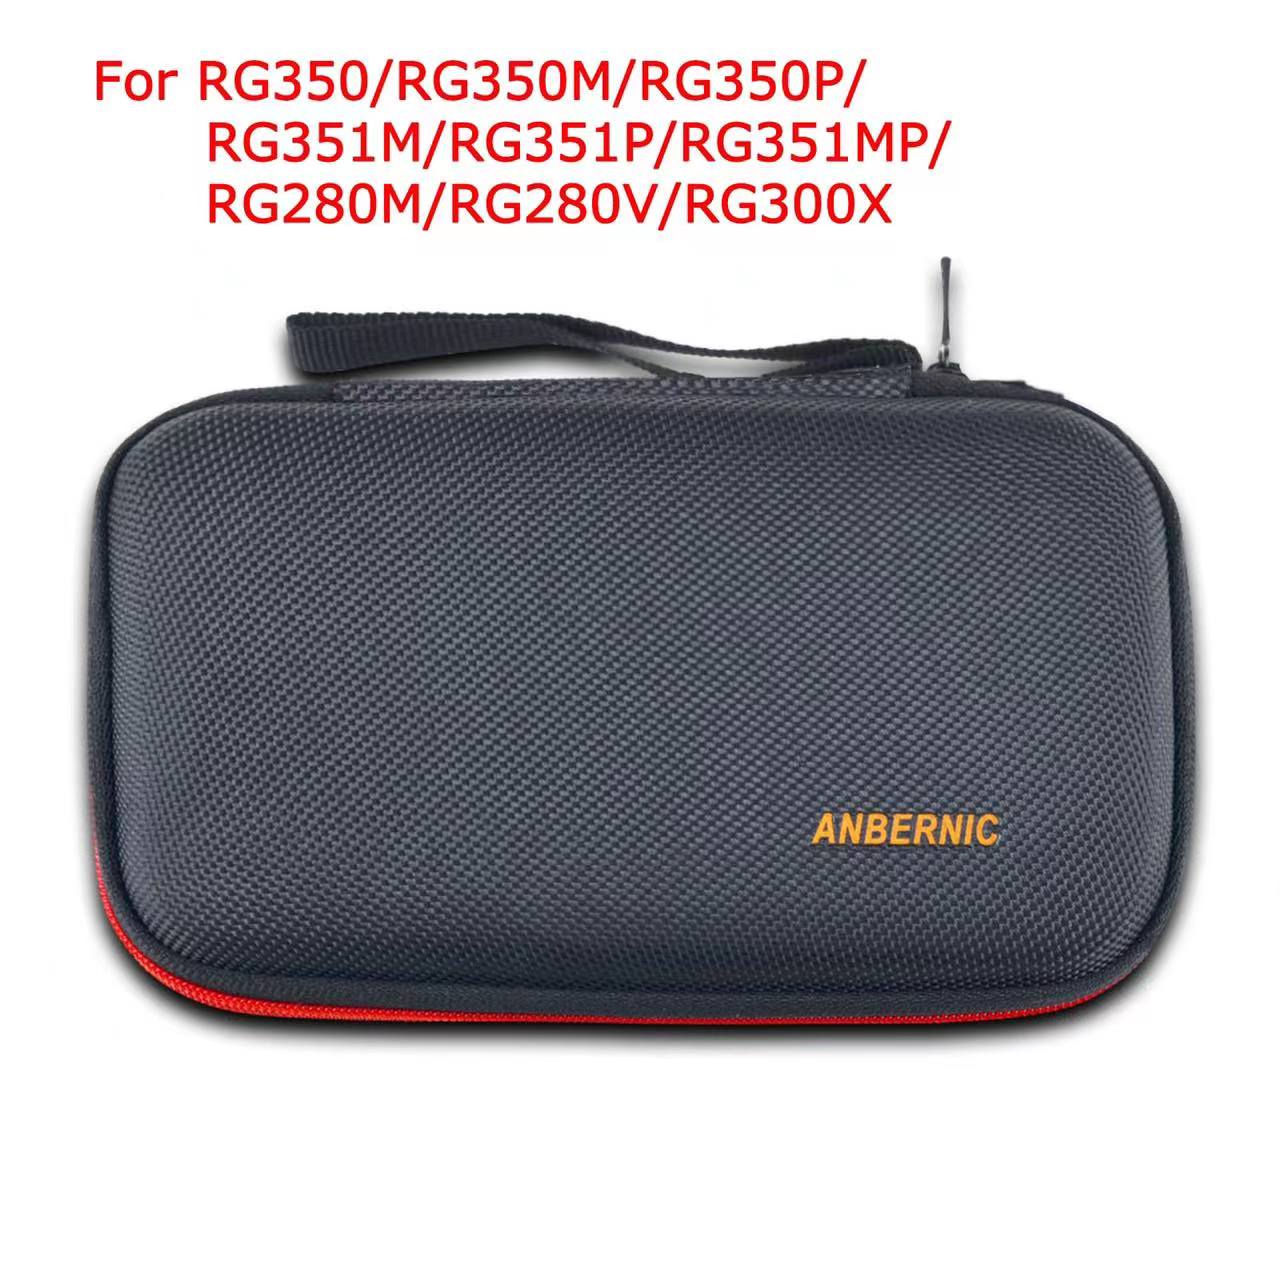 Bolsa de proteção anbernic rg350/rg350m/rg350p e peças para console de jogo retrô jogador rg351p handheld retro console de jogo bolsa e peças enviadas da china